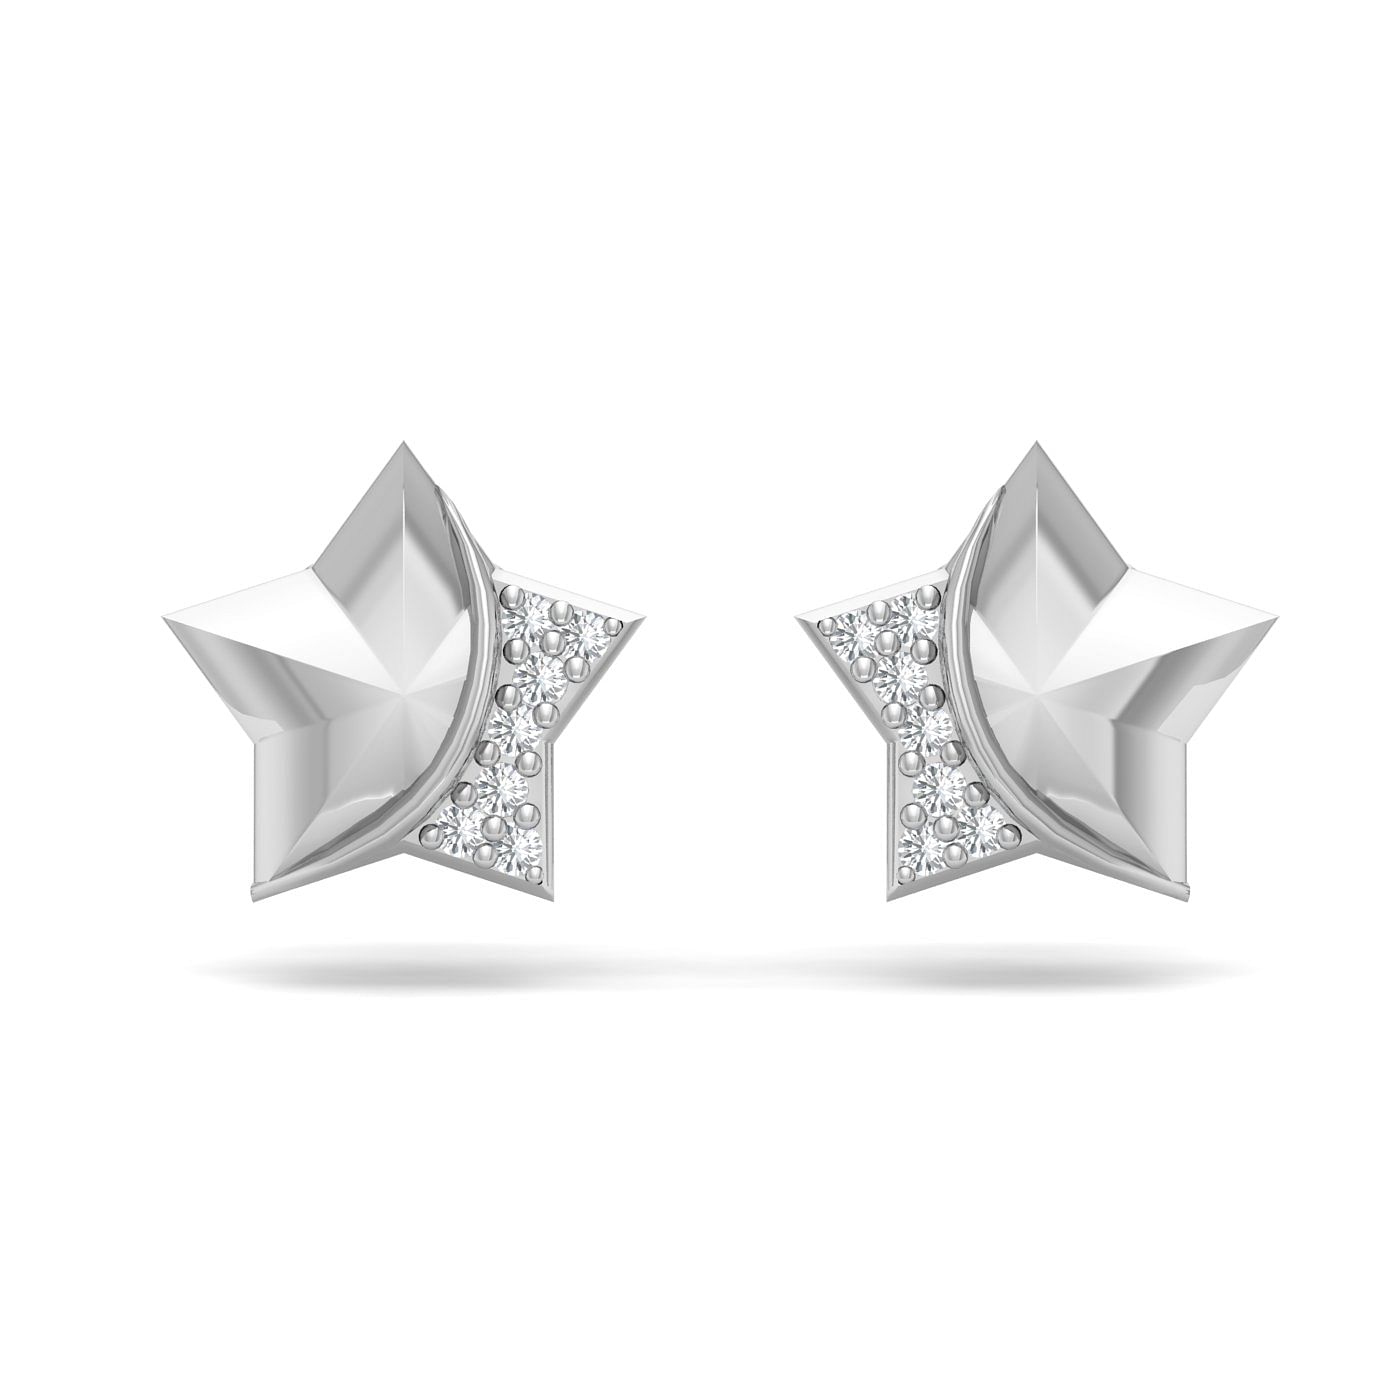 White gold Twinkle Diamond Stud Earrings